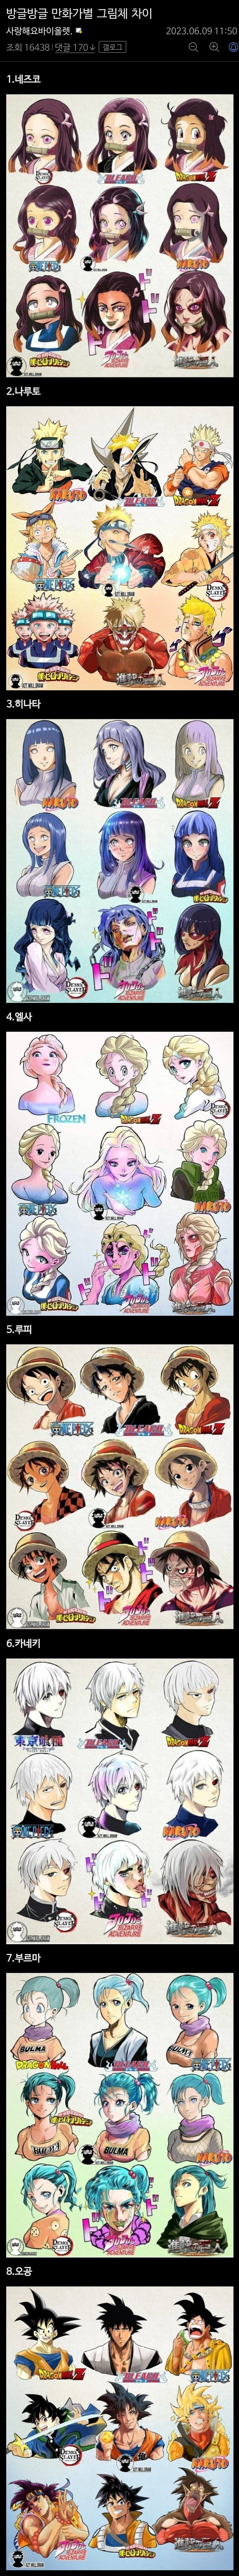 20 일본 만화가별 그림체 차이.jpg